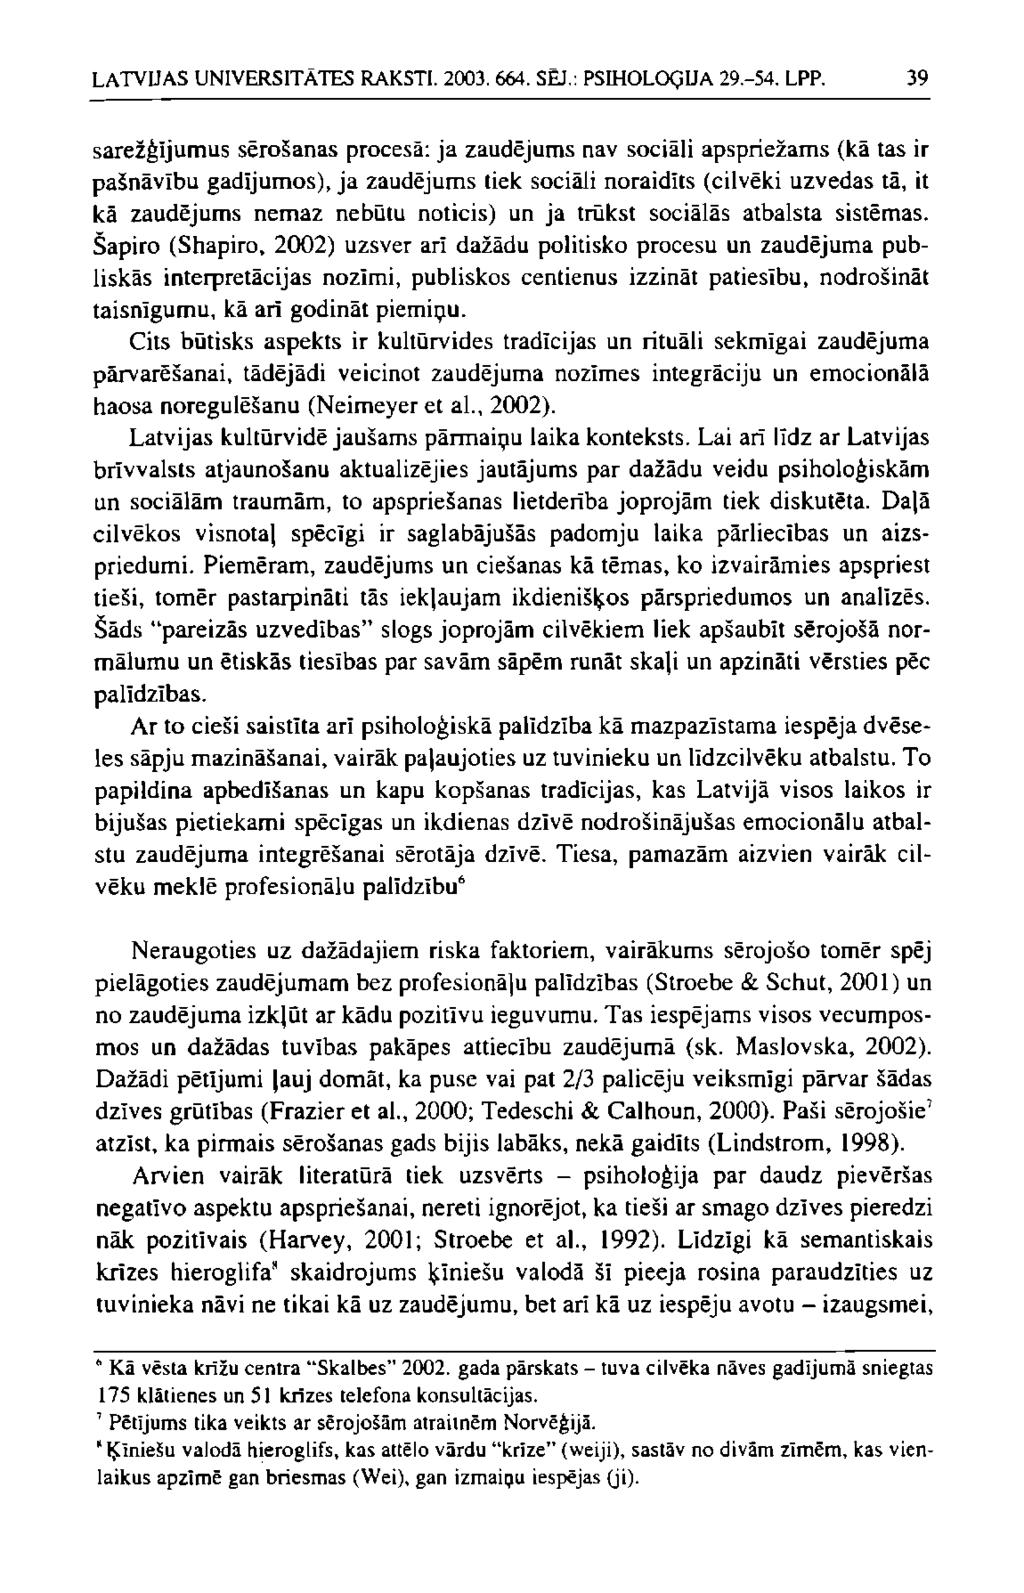 LATVUAS UNIVERSITĀTES RAKSTI. 2003. 664. SĒJ.: PSIHOLOĢIJA 29.-54. LPP.